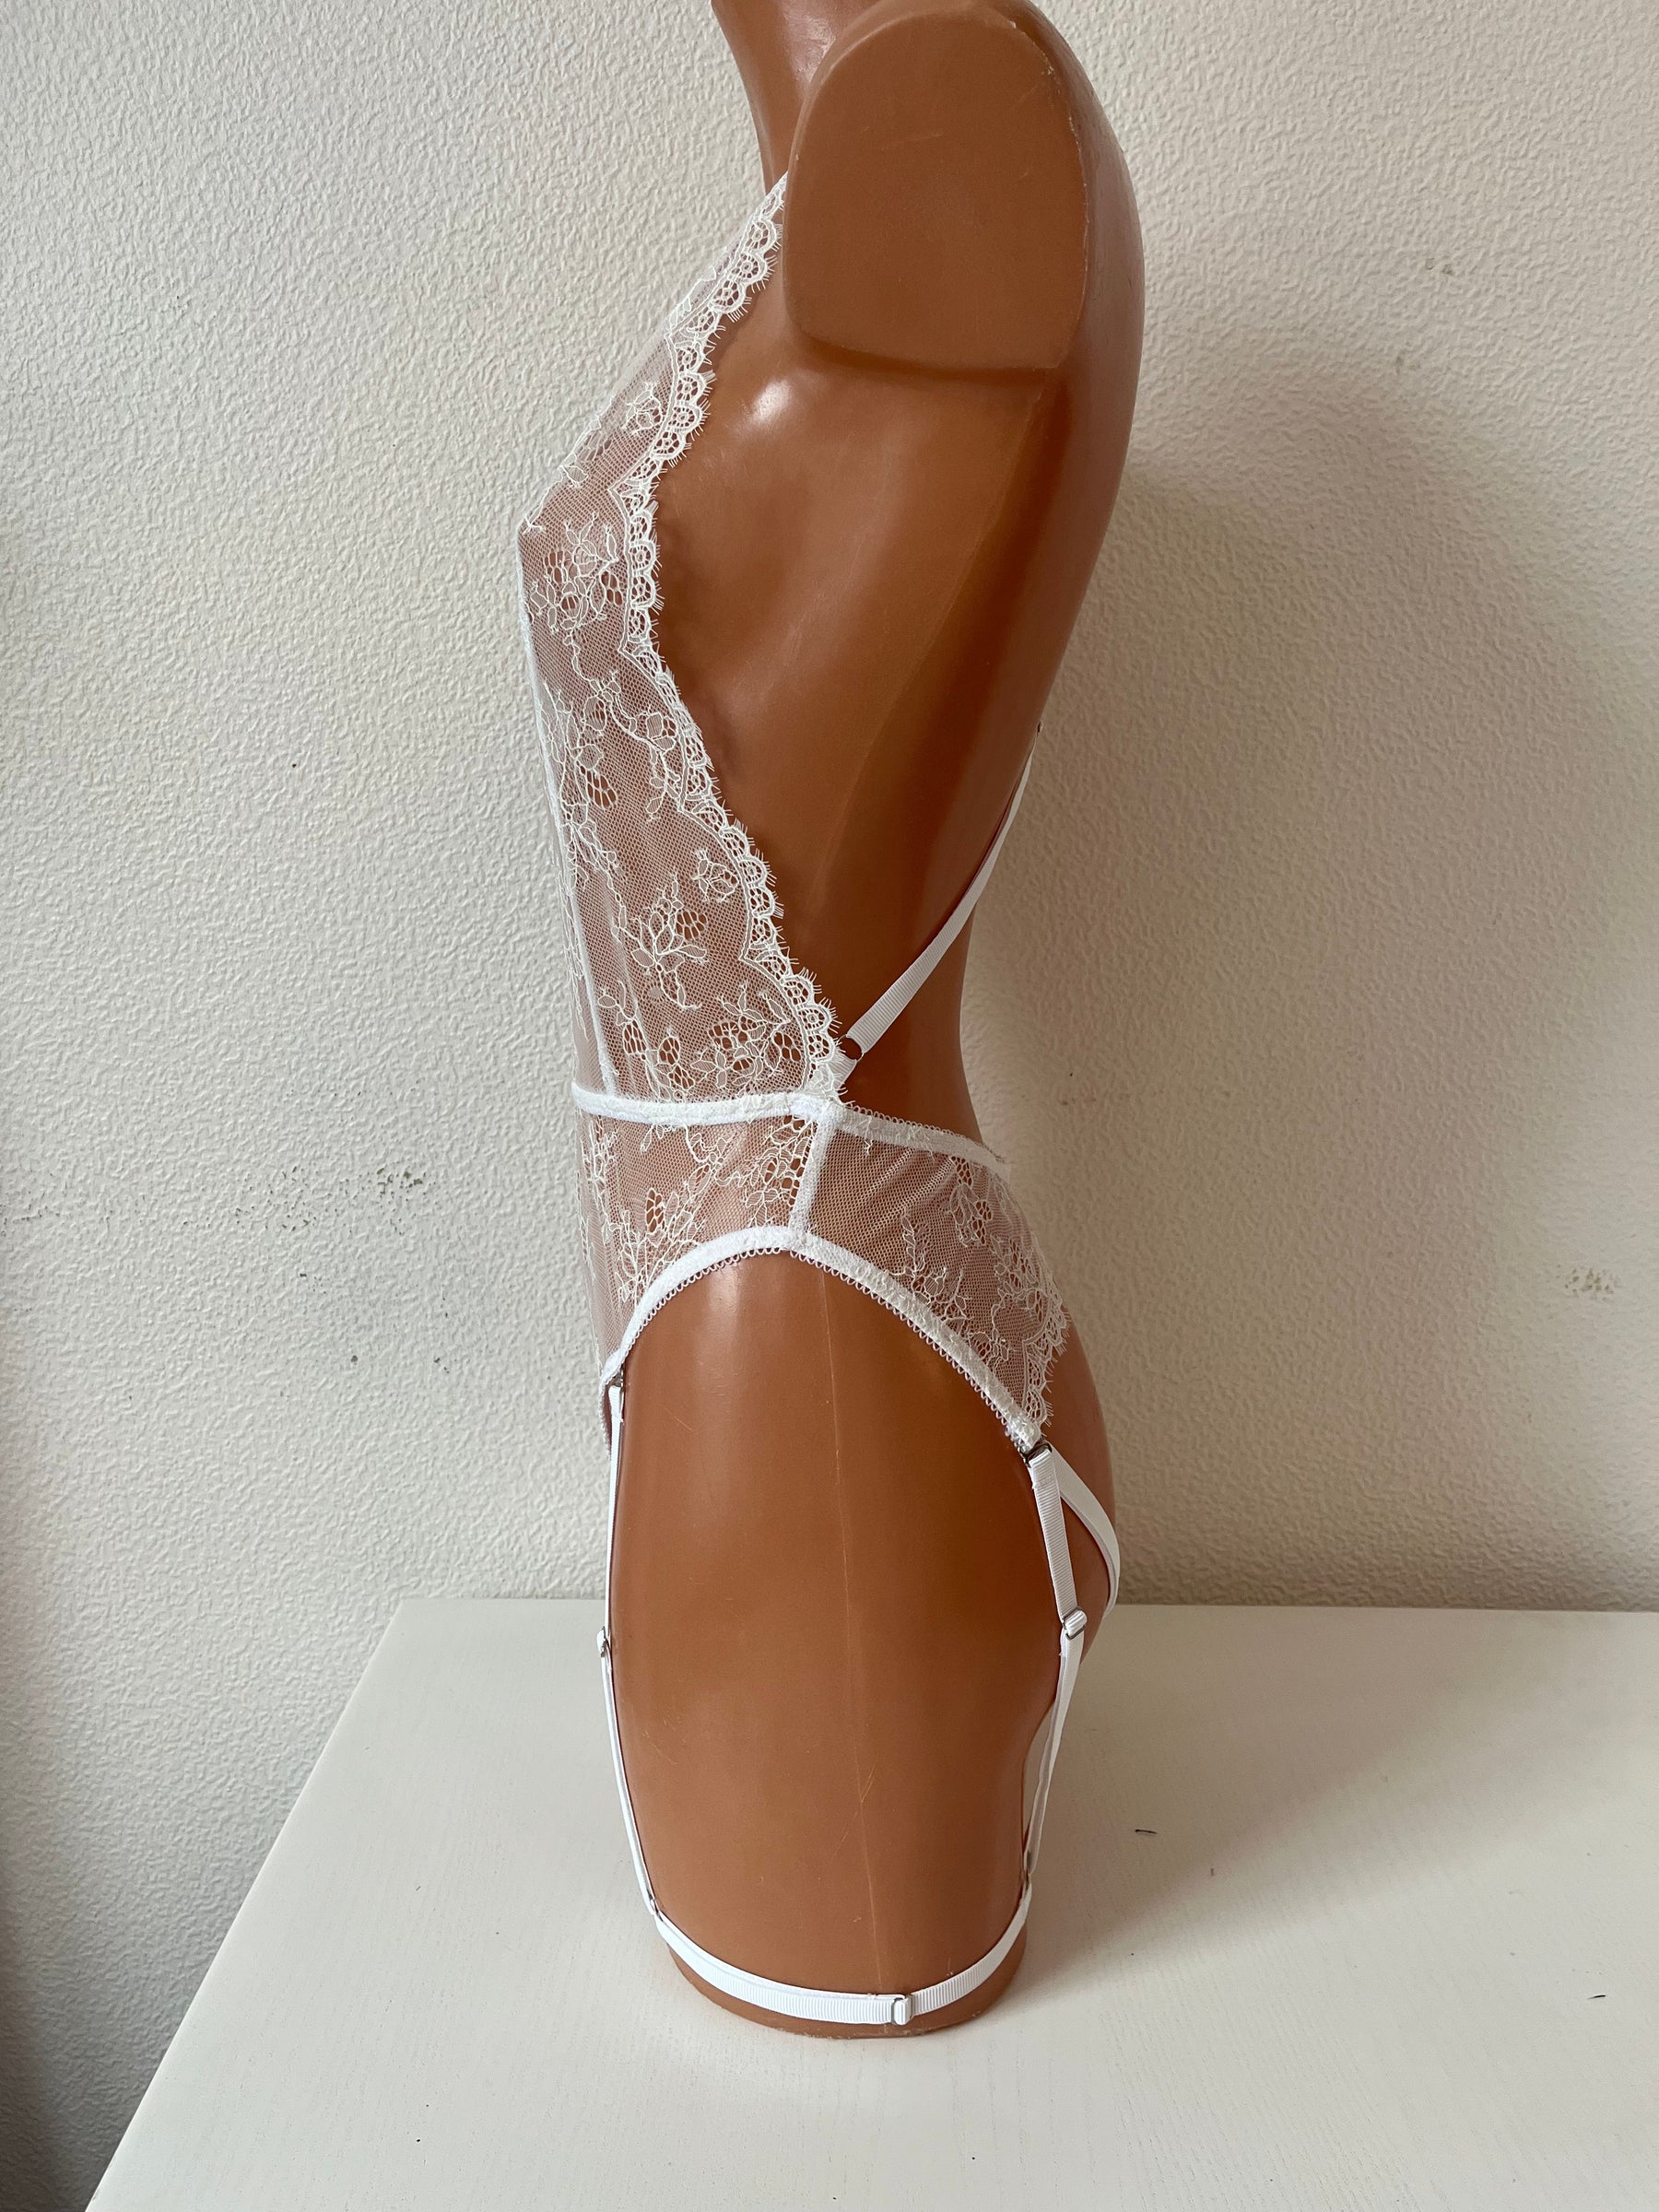 "Kinky Sage" crotchless lingerie bodysuit